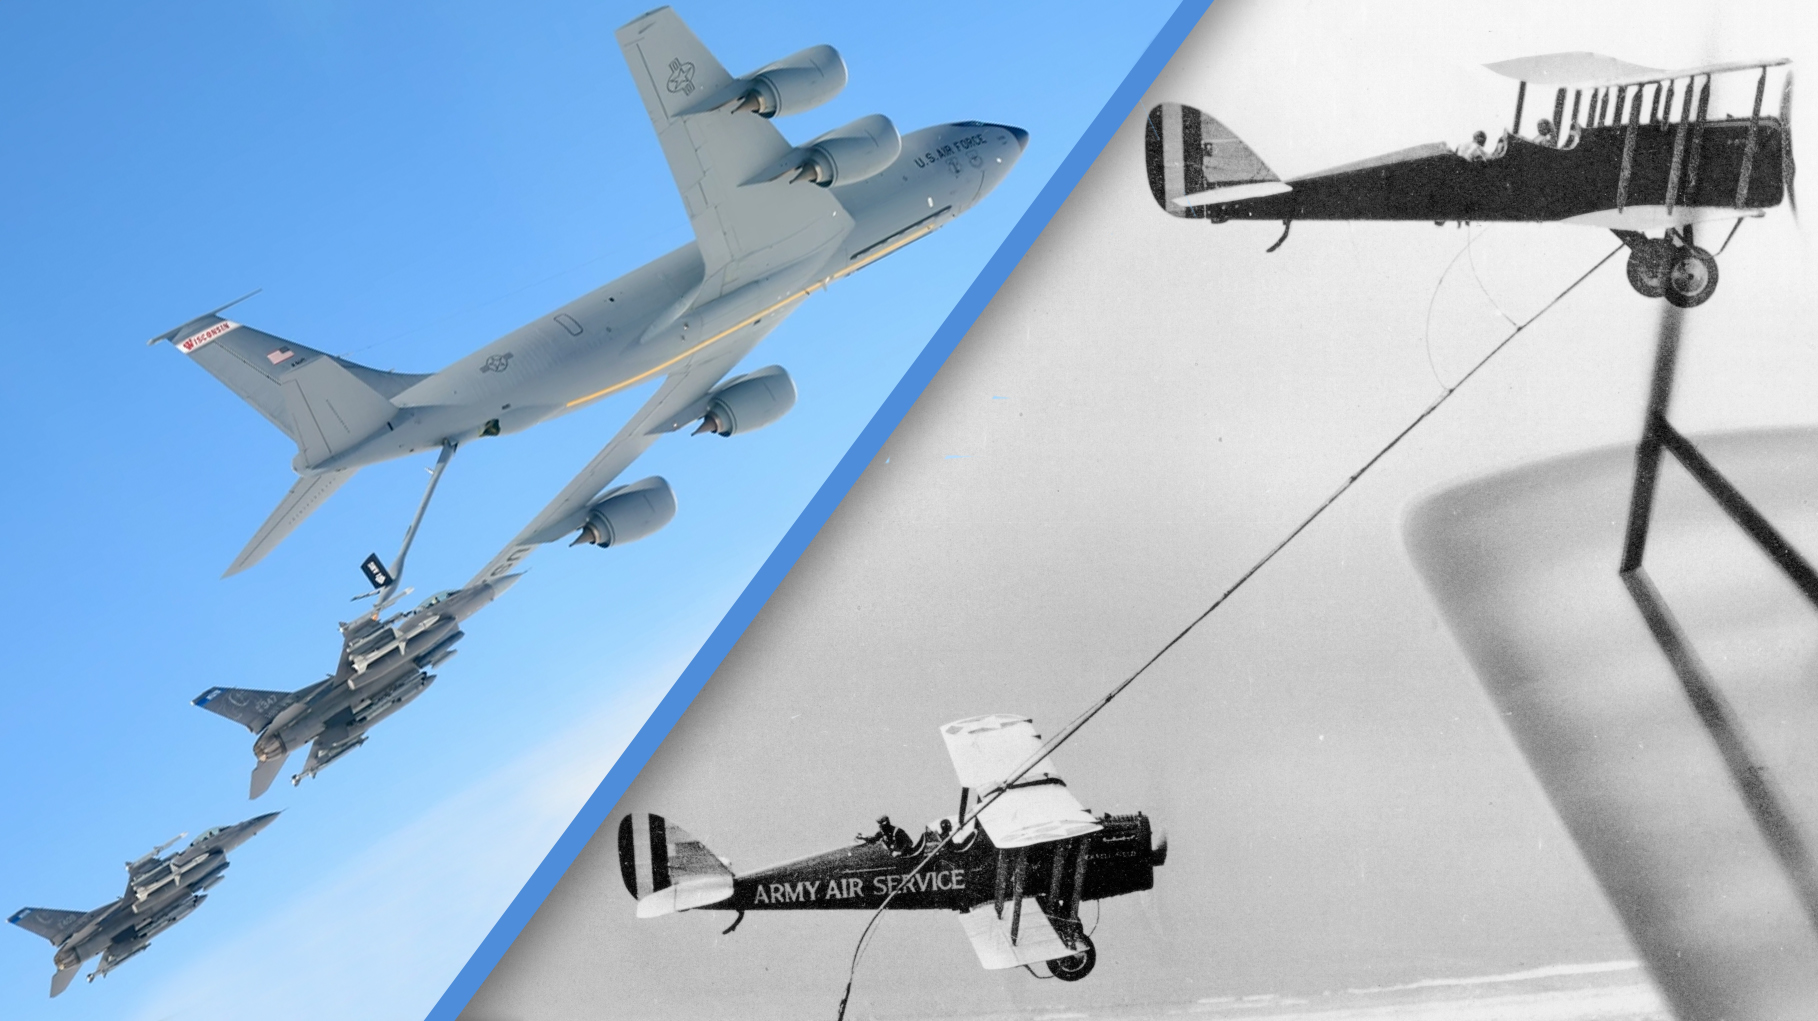 100 years aerial refueling